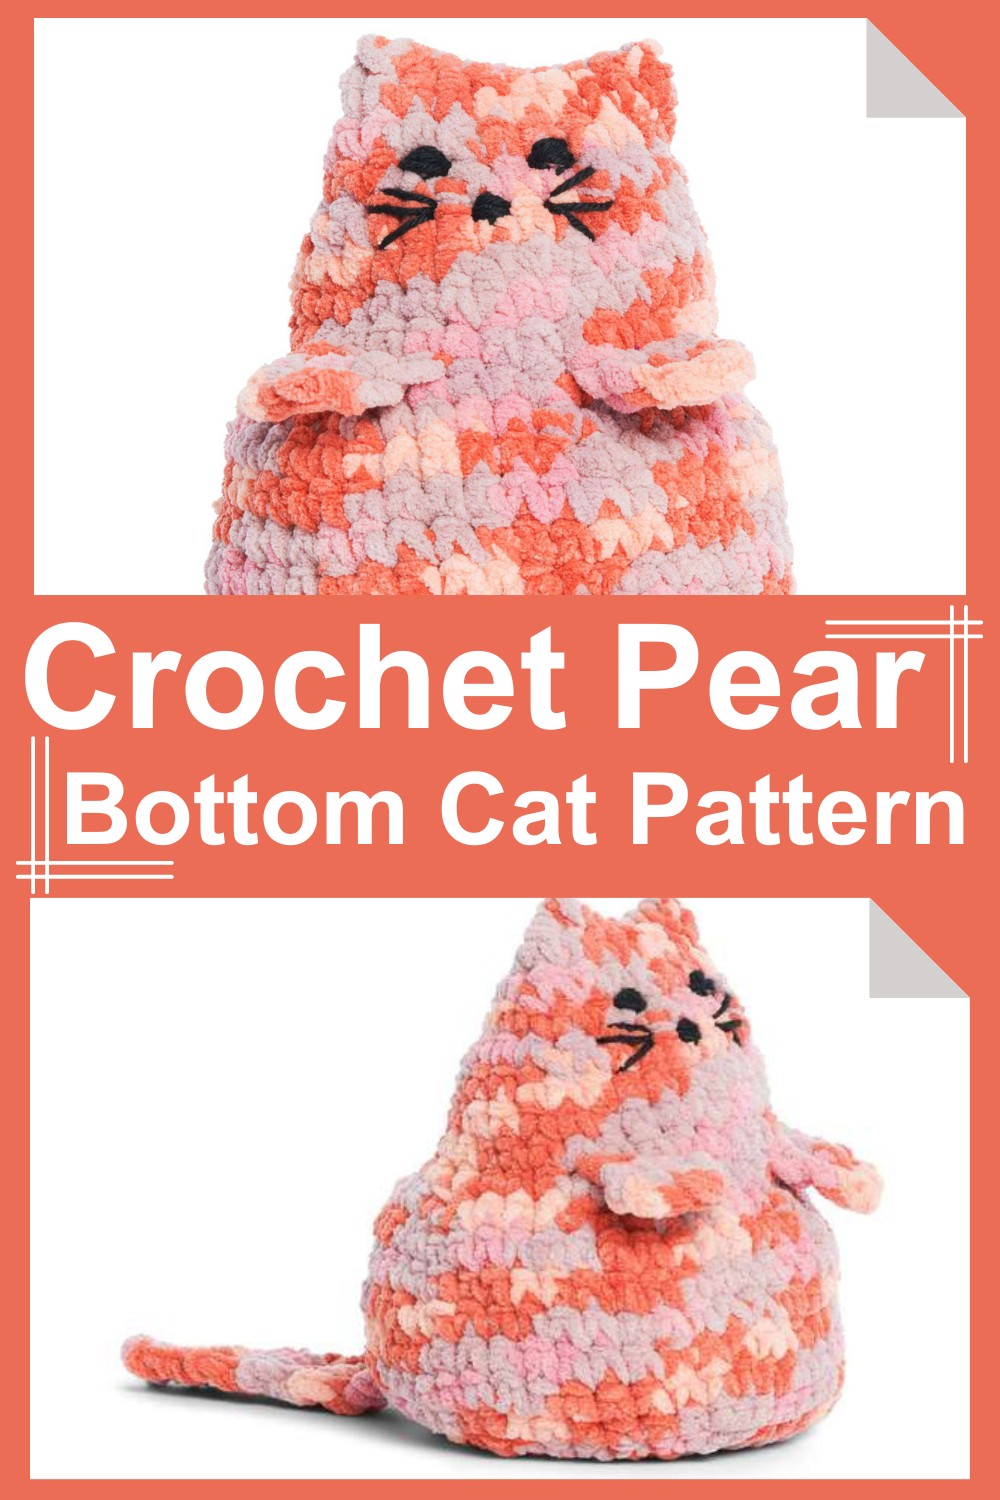 Crochet Pear Bottom Cat Pattern